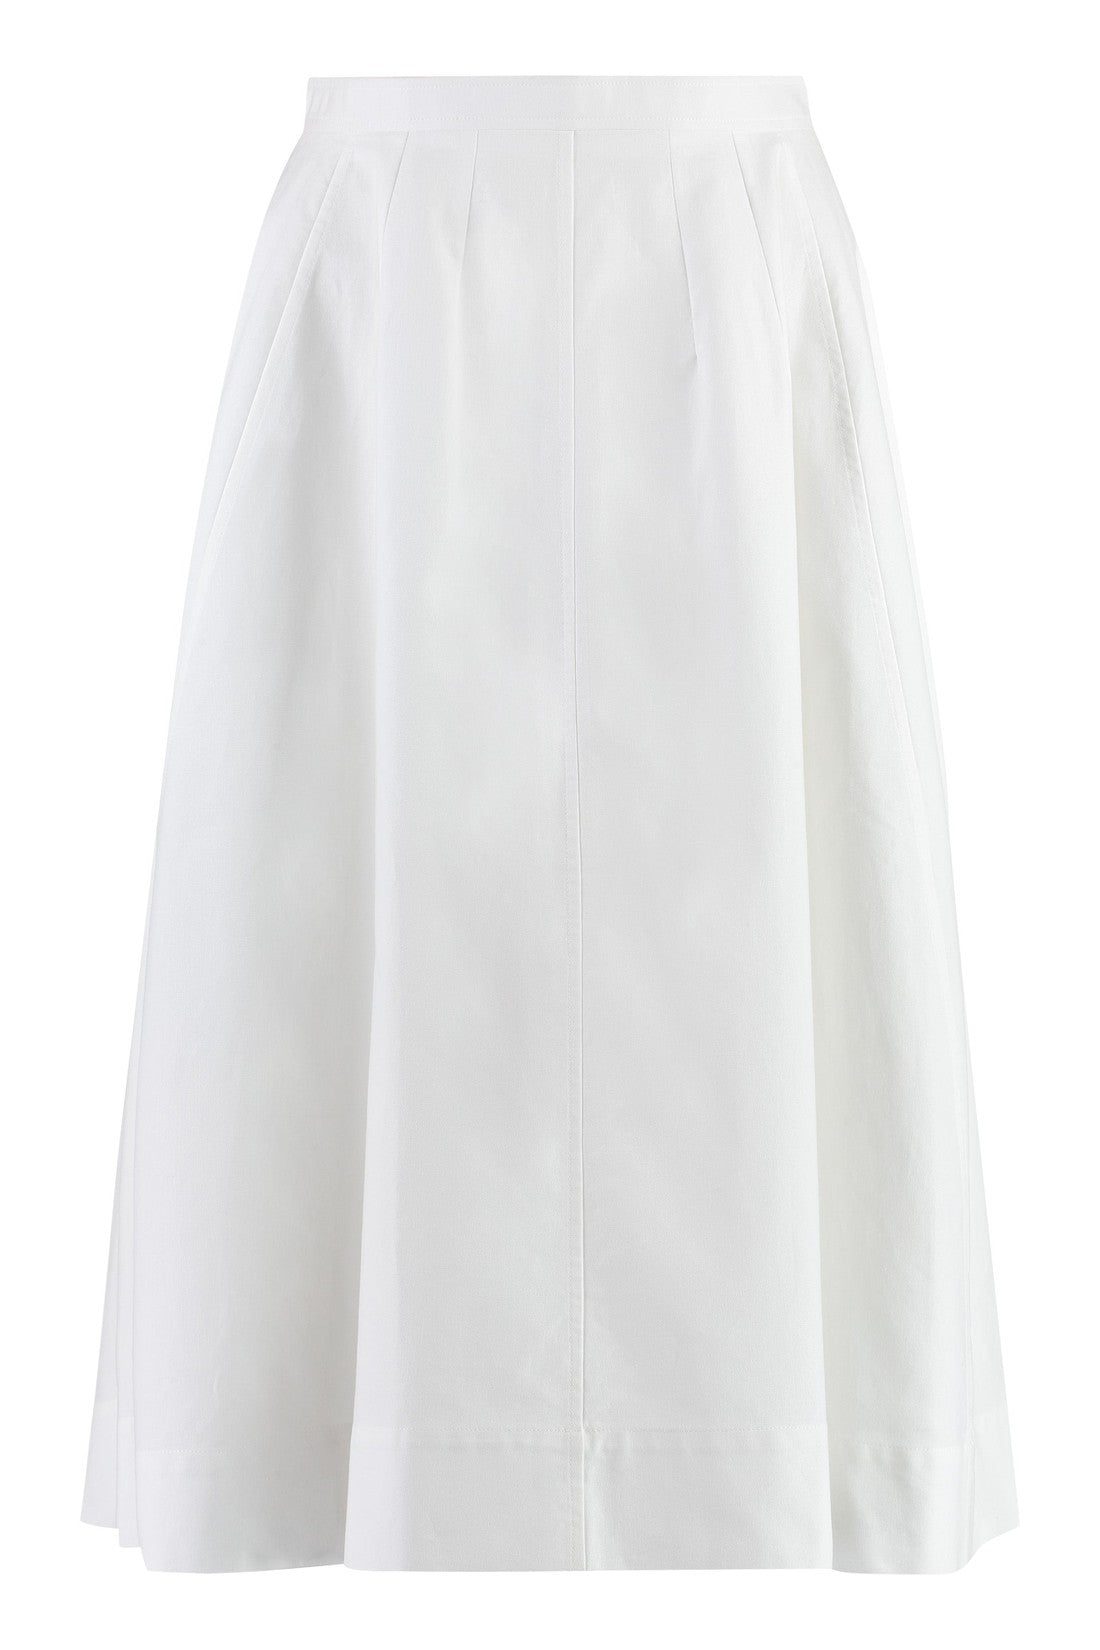 Chloé-OUTLET-SALE-Cotton midi skirt-ARCHIVIST